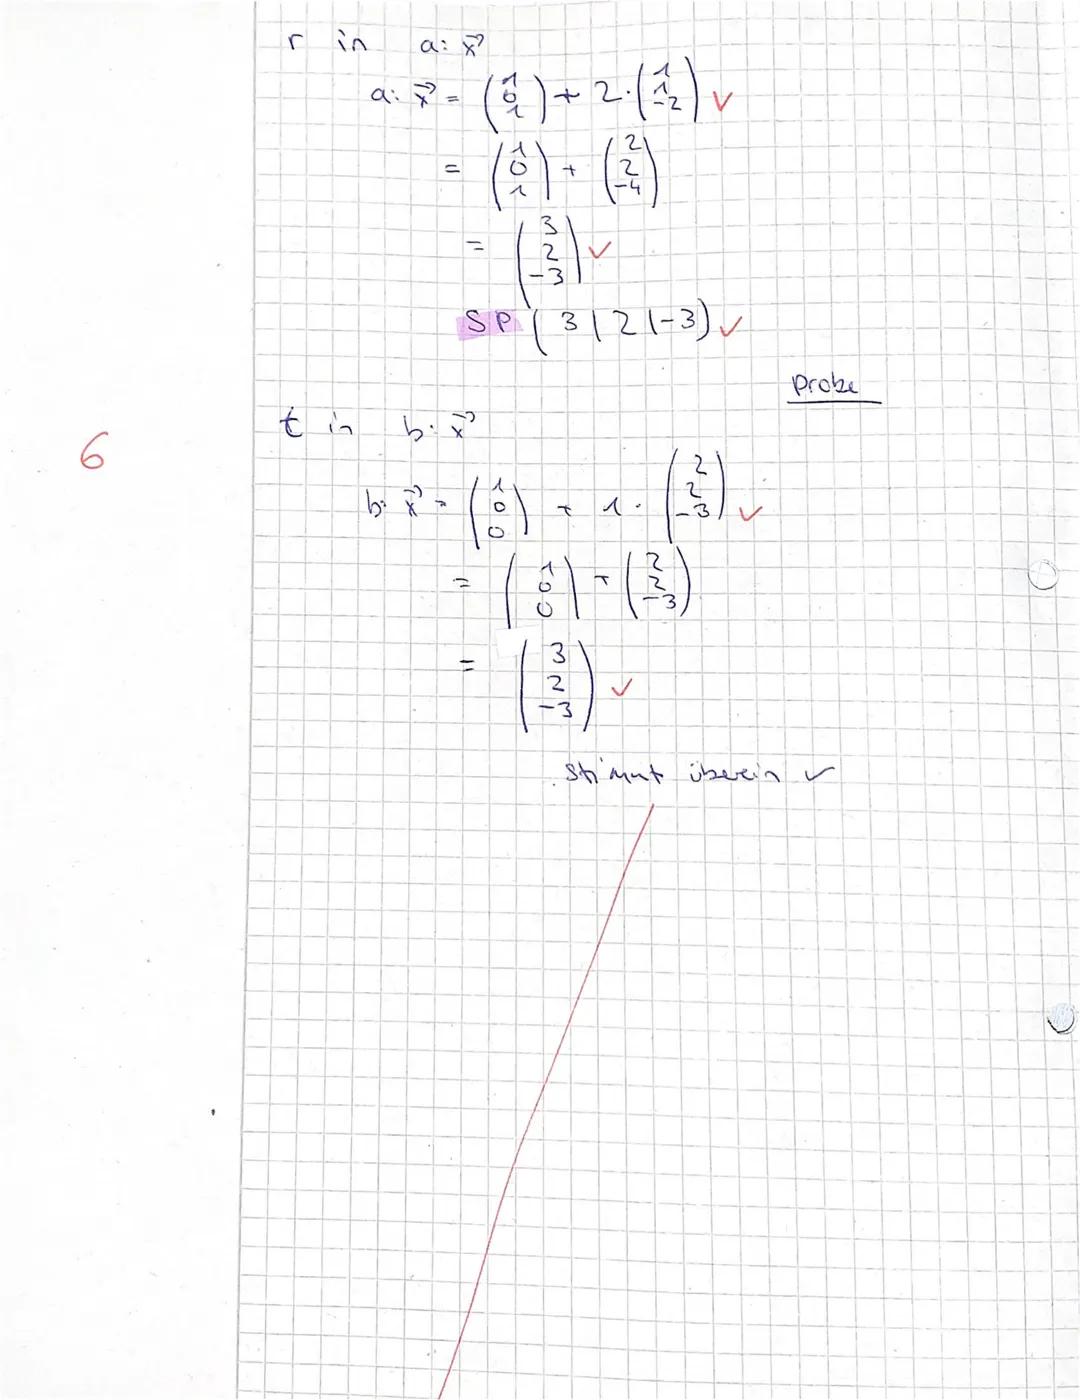 GK Mathematik
Achten Sie auf nachvollziehbare Rechenwege!
1. Gegeben ist das Dreieck ABC mit den Eckpunkten A(4 | 5 | 3), B(-1|3|-4) und C(3